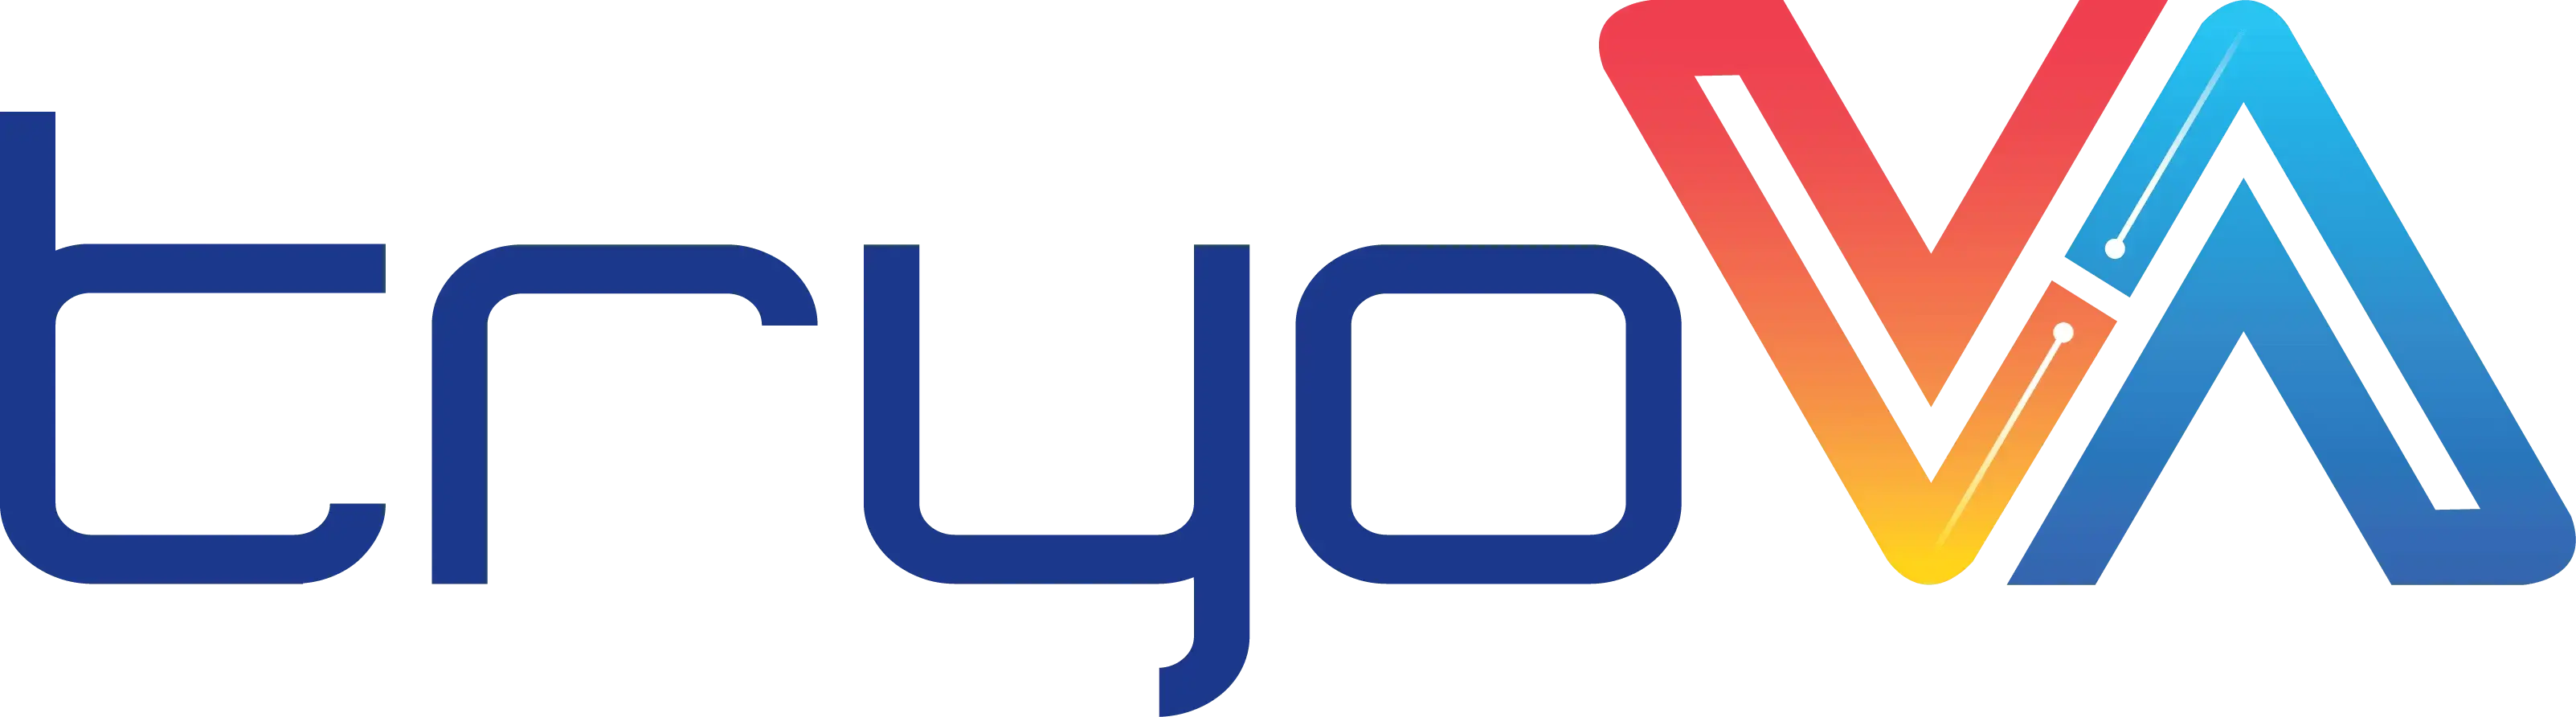 tryoVA-logo